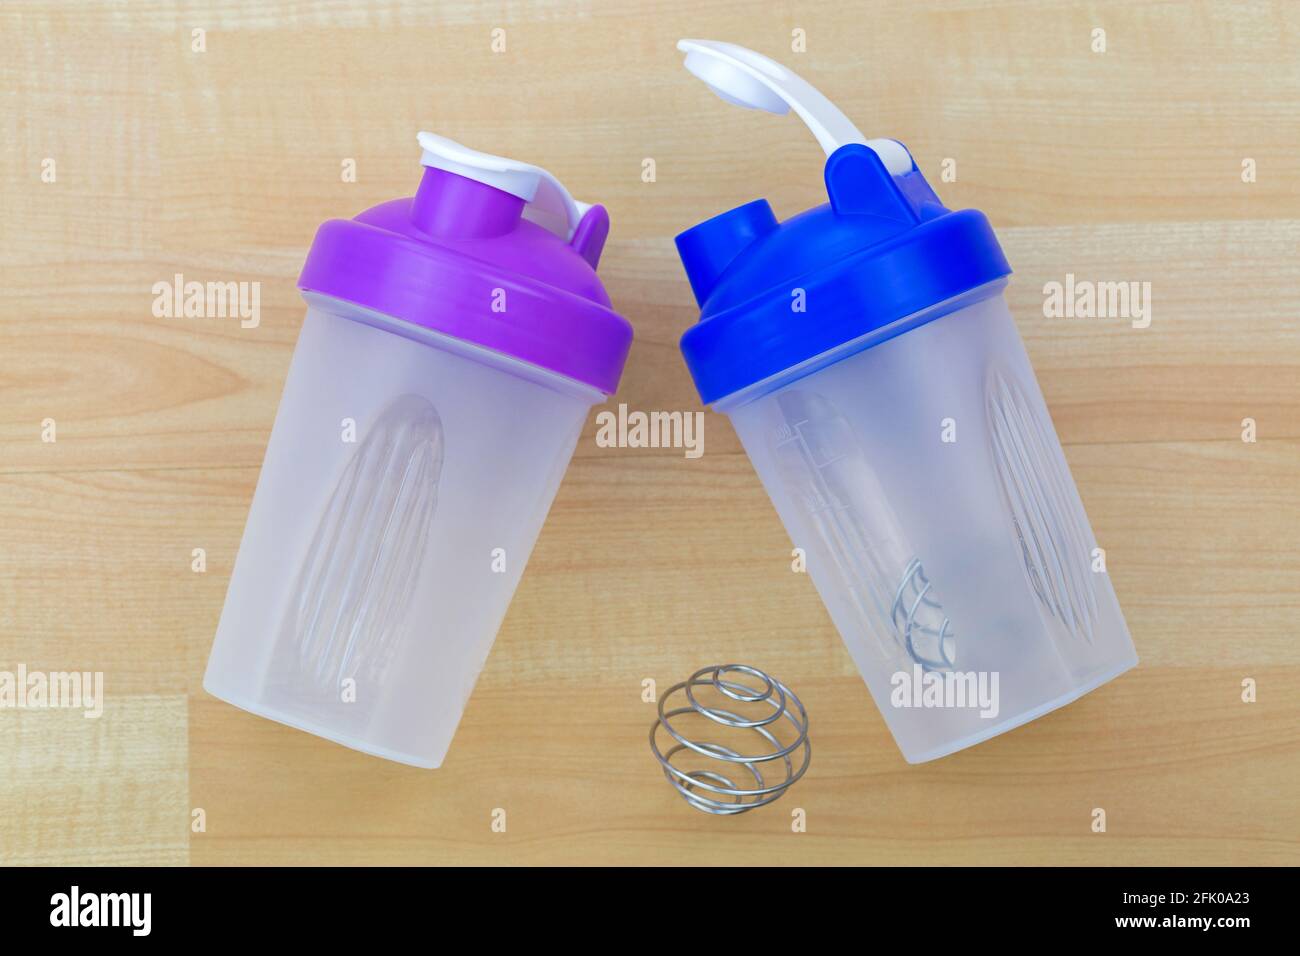 Kunststoff Flasche Protein-Shake-Mixer mit Metall-Shaker Spiral-Feder-Kugel  zu mischen, auf Holzhintergrund Stockfotografie - Alamy